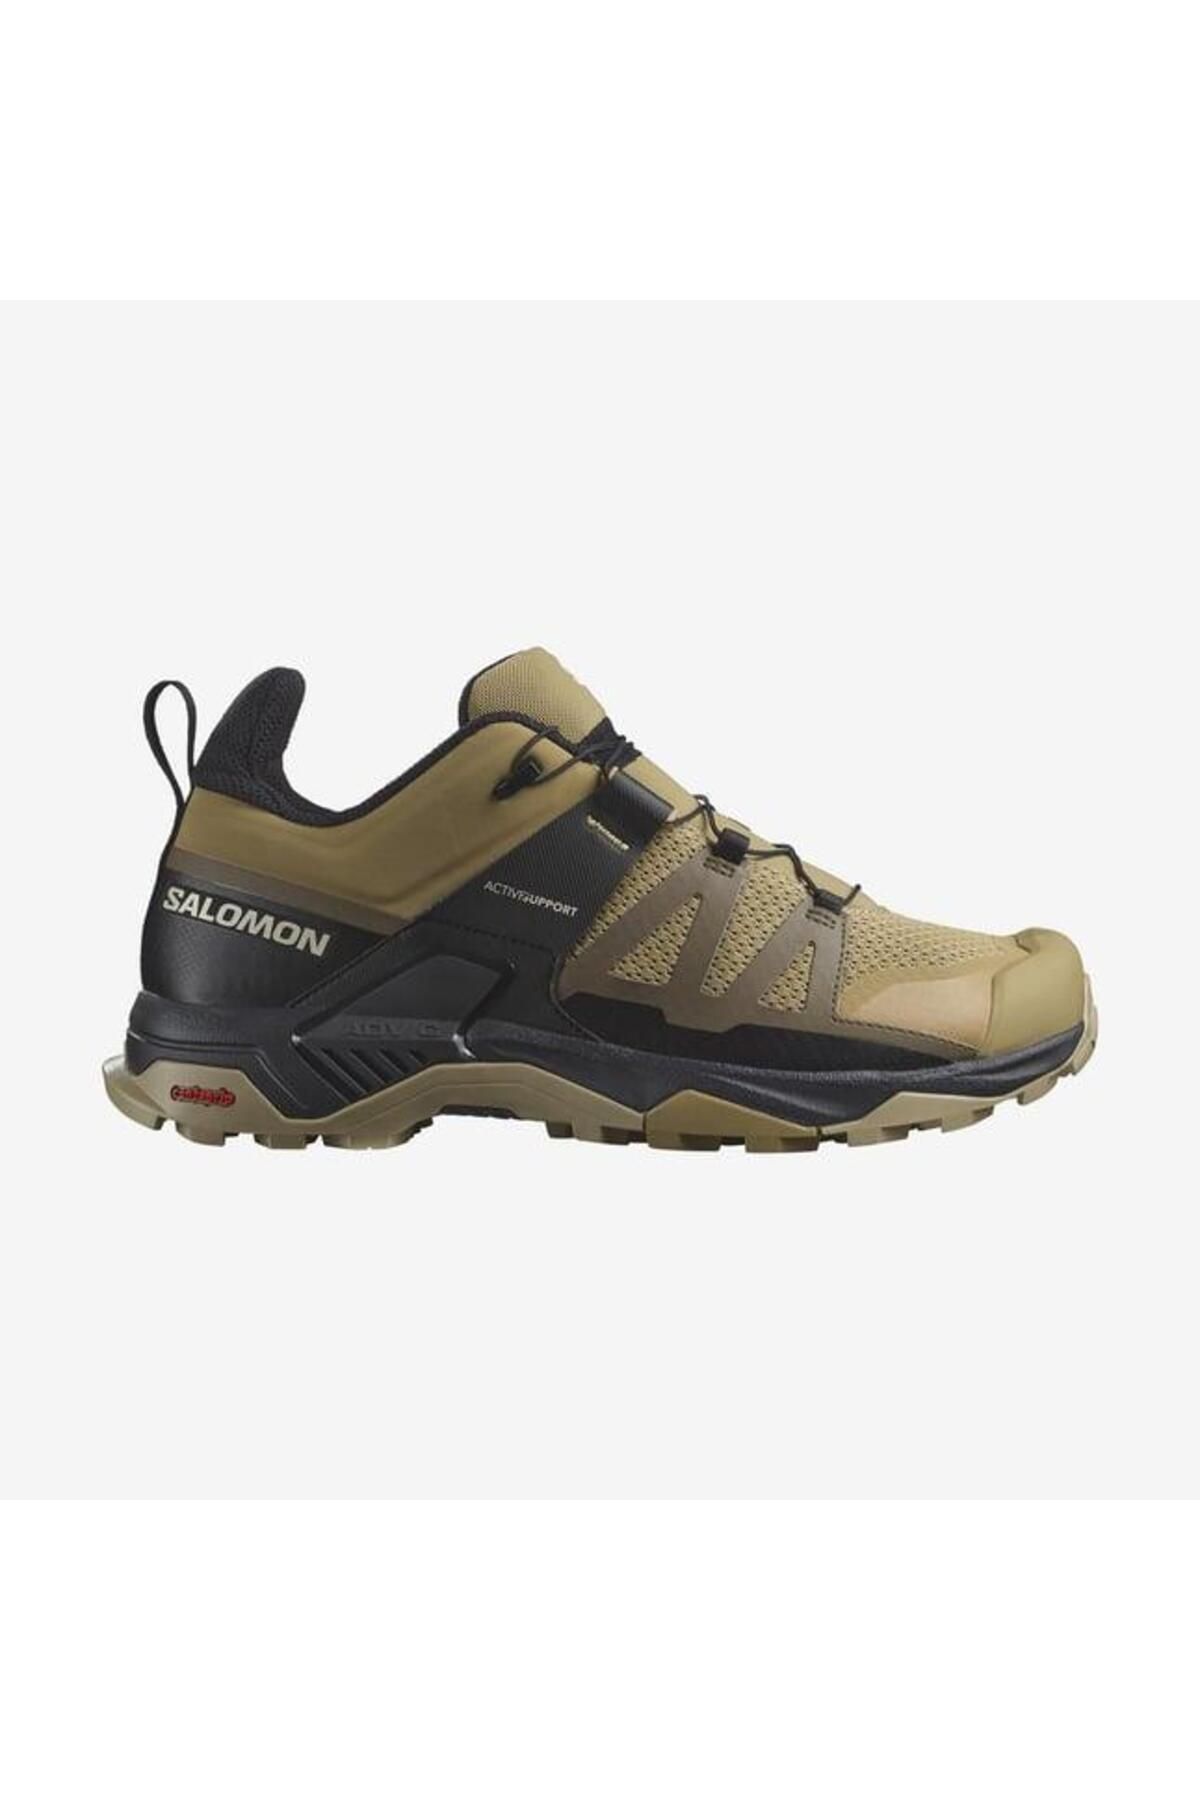 Salomon X Ultra 4 Haki Erkek Outdoor Ayakkabı L47452300